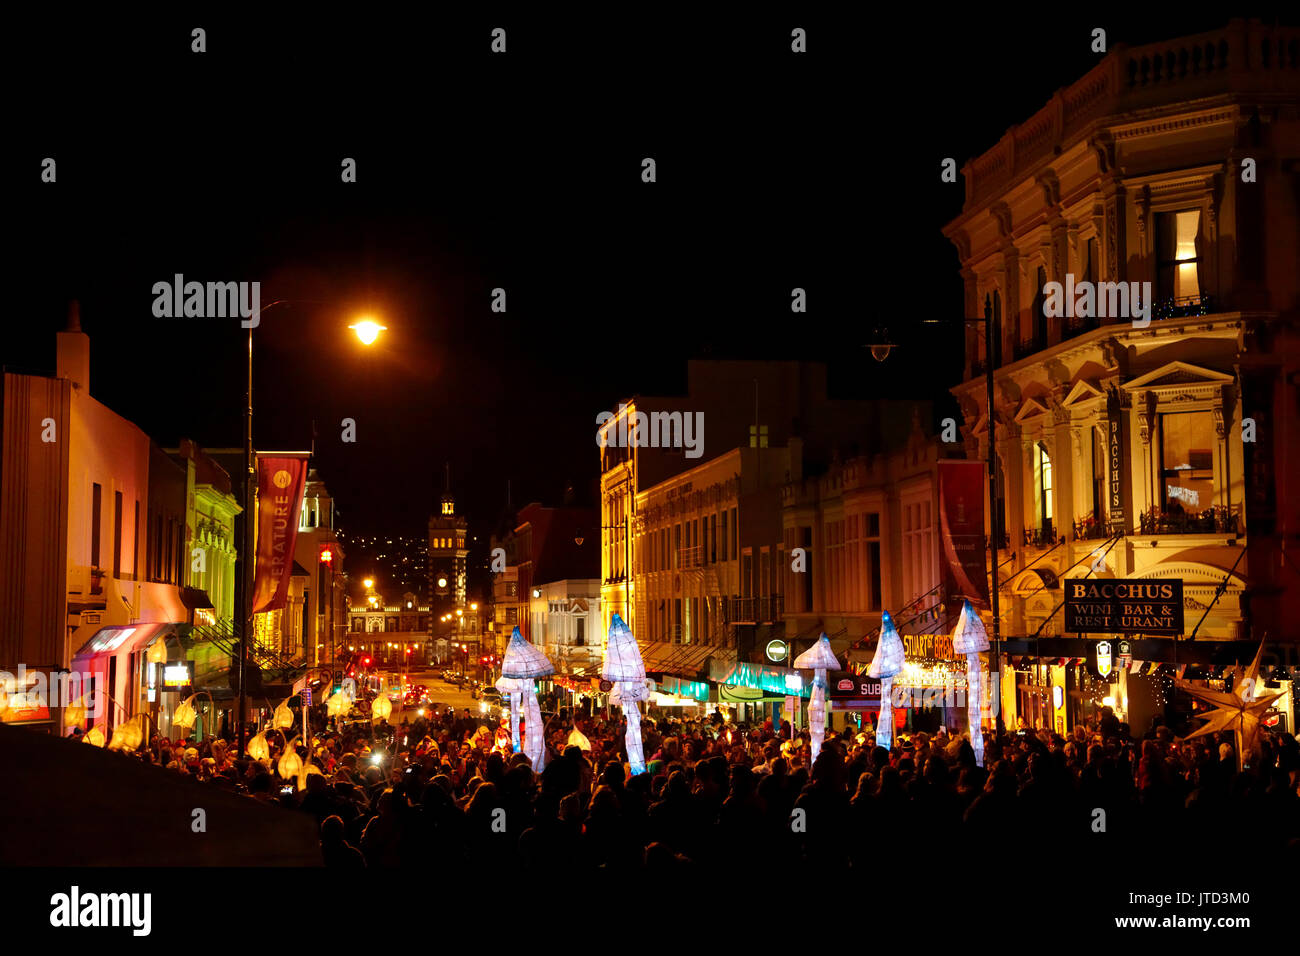 Lantern parade, Carnaval de la mi-hiver, l'octogone, Dunedin, île du Sud, Nouvelle-Zélande Banque D'Images